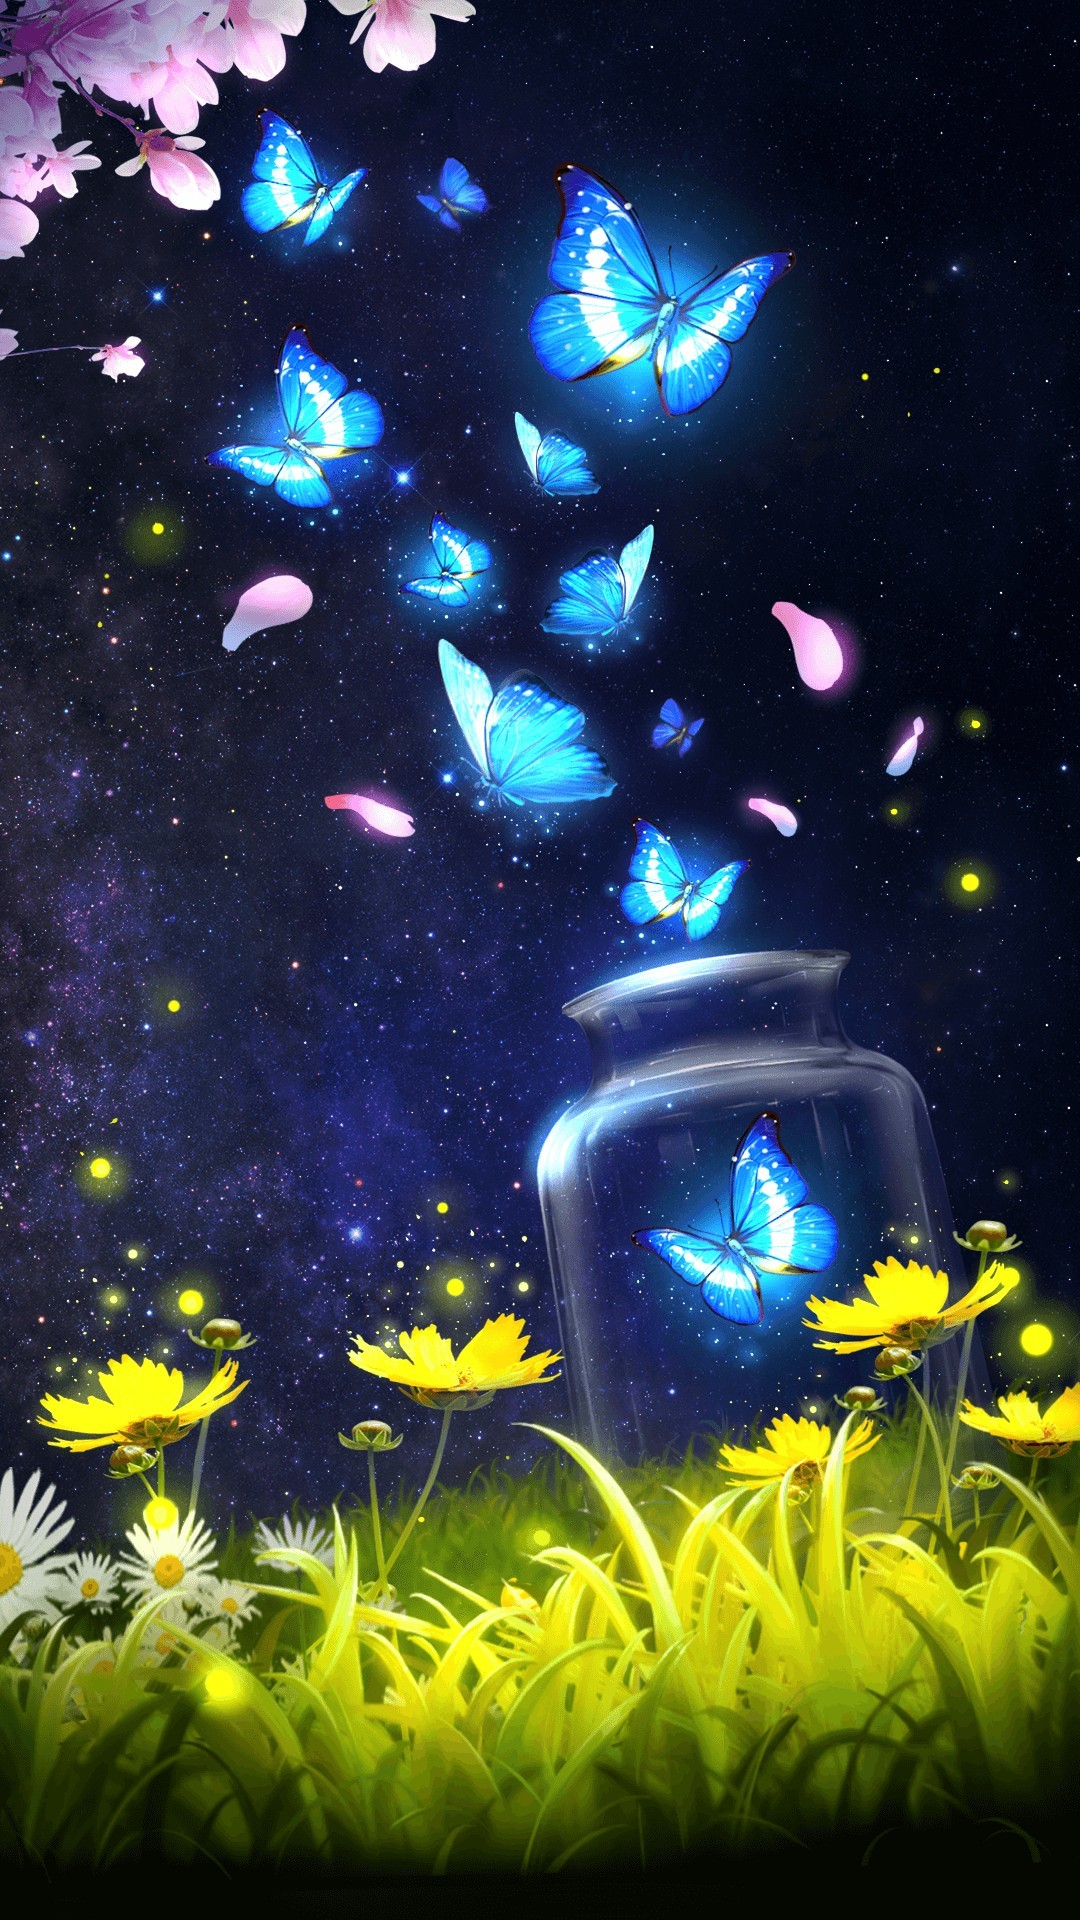 エレガントかっこいい 壁紙 蝶 イラスト 花の画像